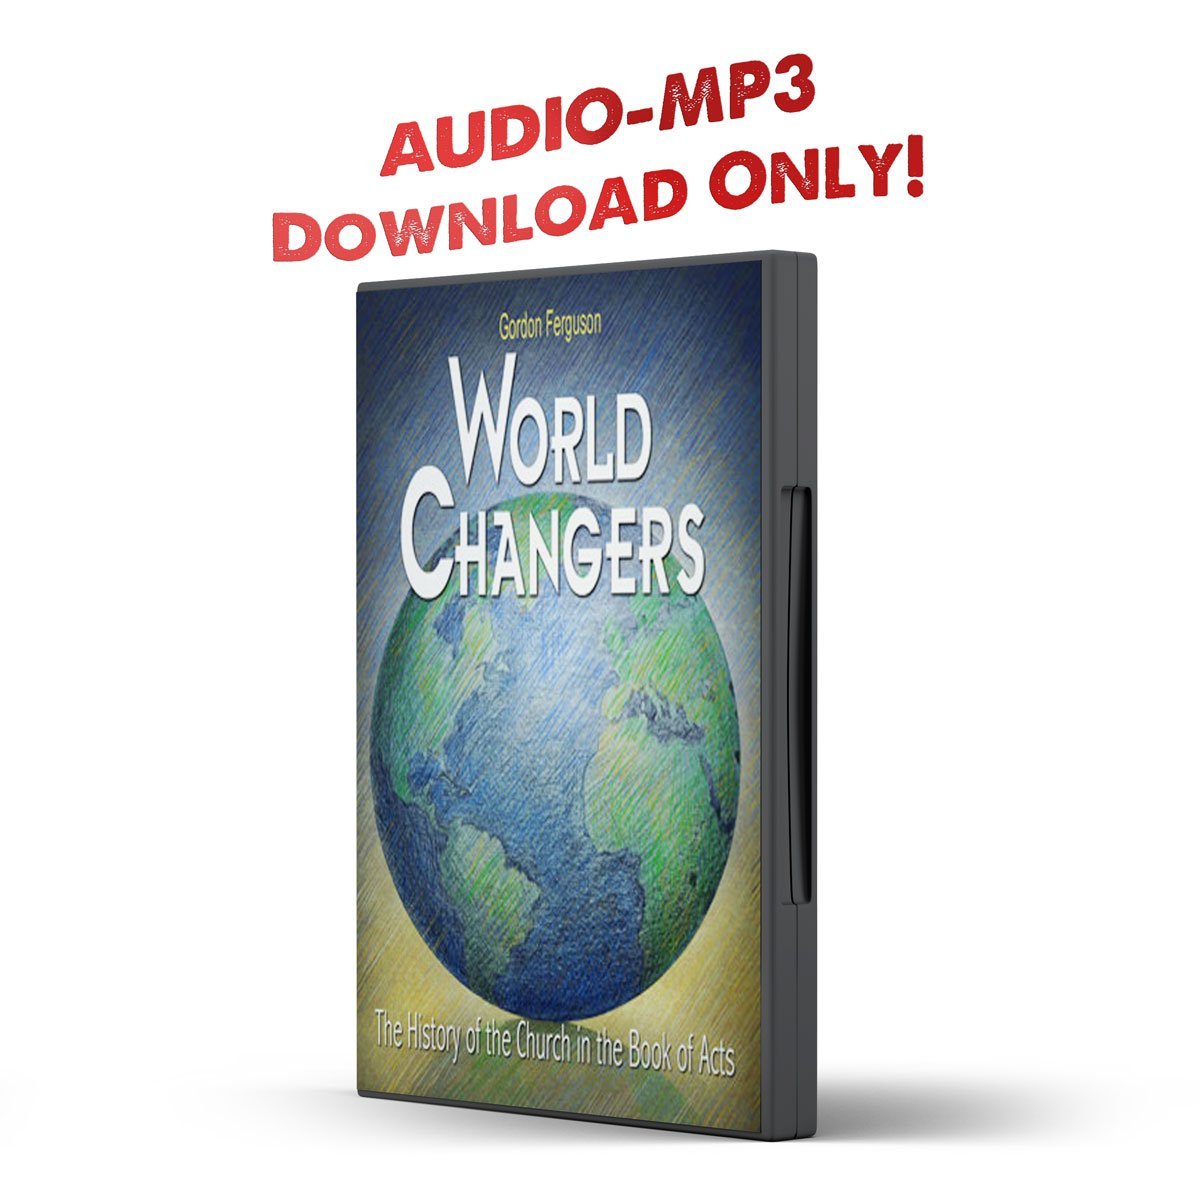 World Changers - Illumination Publishers